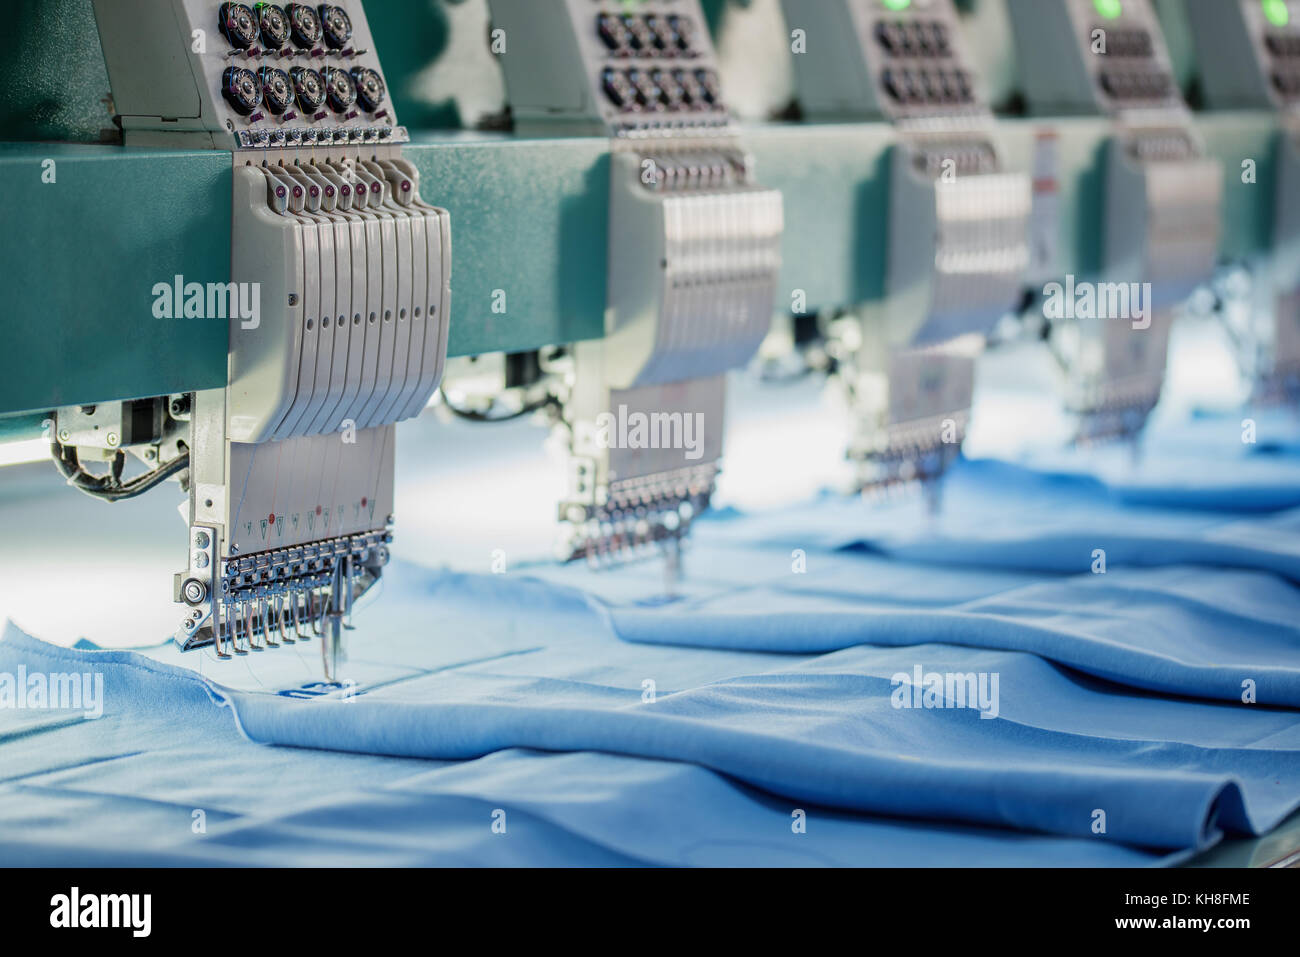 Industriale macchina da ricamo.industria tessile concpet attraverso la tecnologia Foto Stock